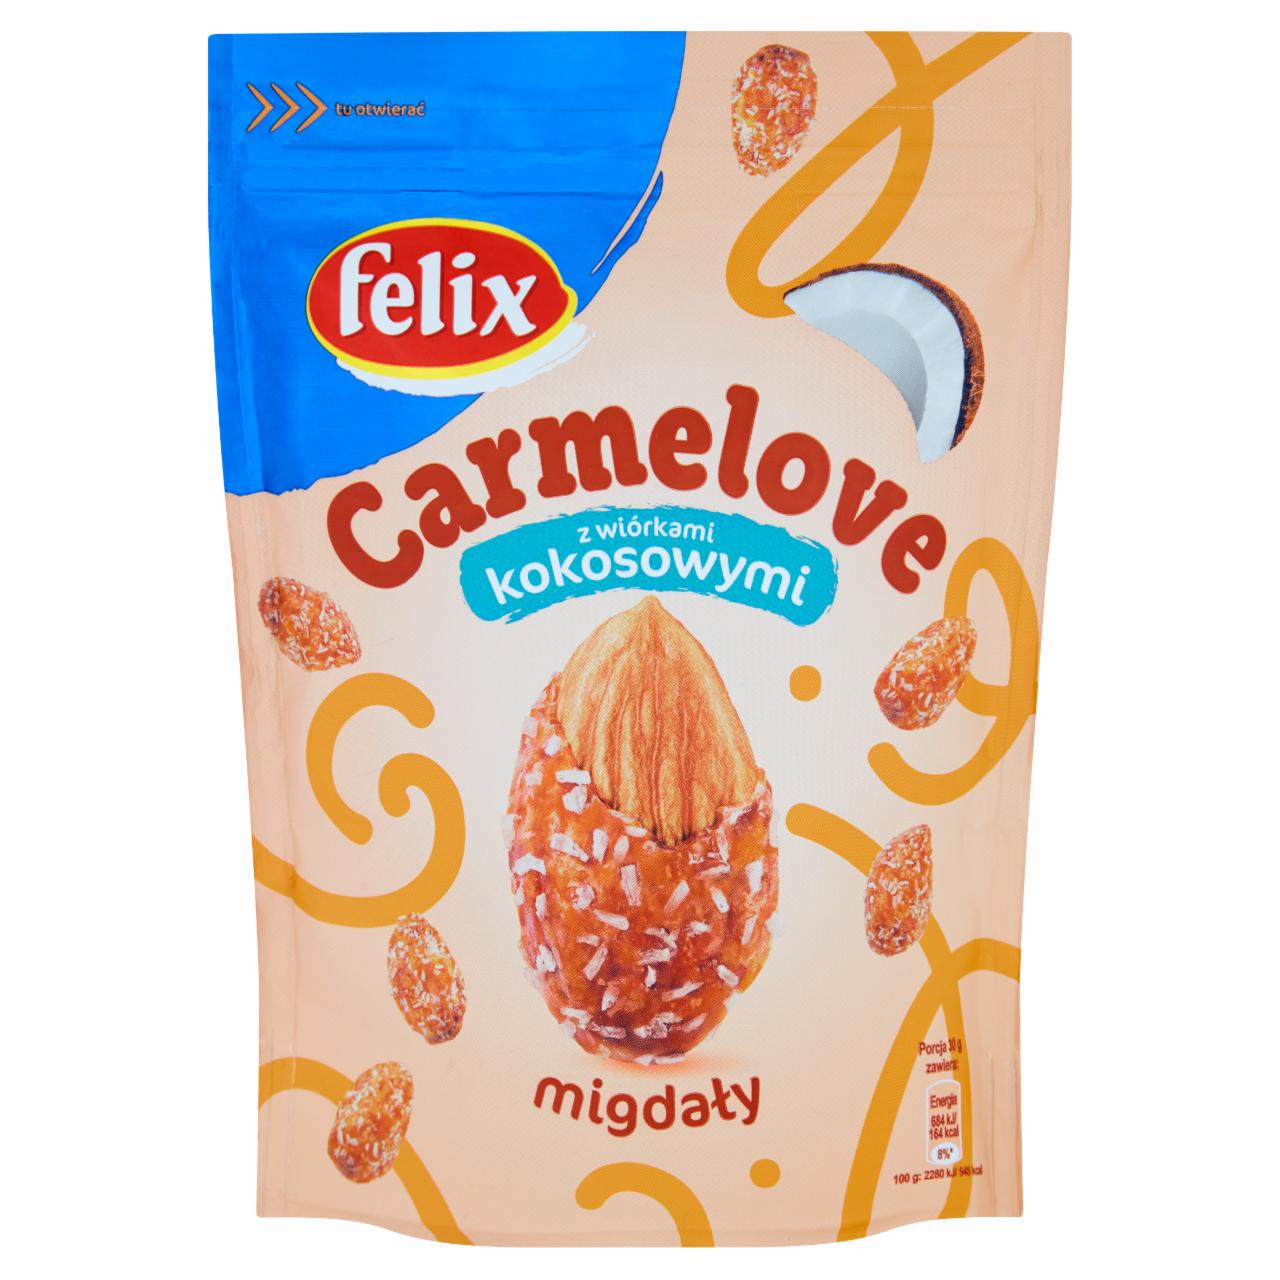 Zdjęcia - Felix Carmelove Migdały w karmelu z wiórkami kokosowymi 160 g